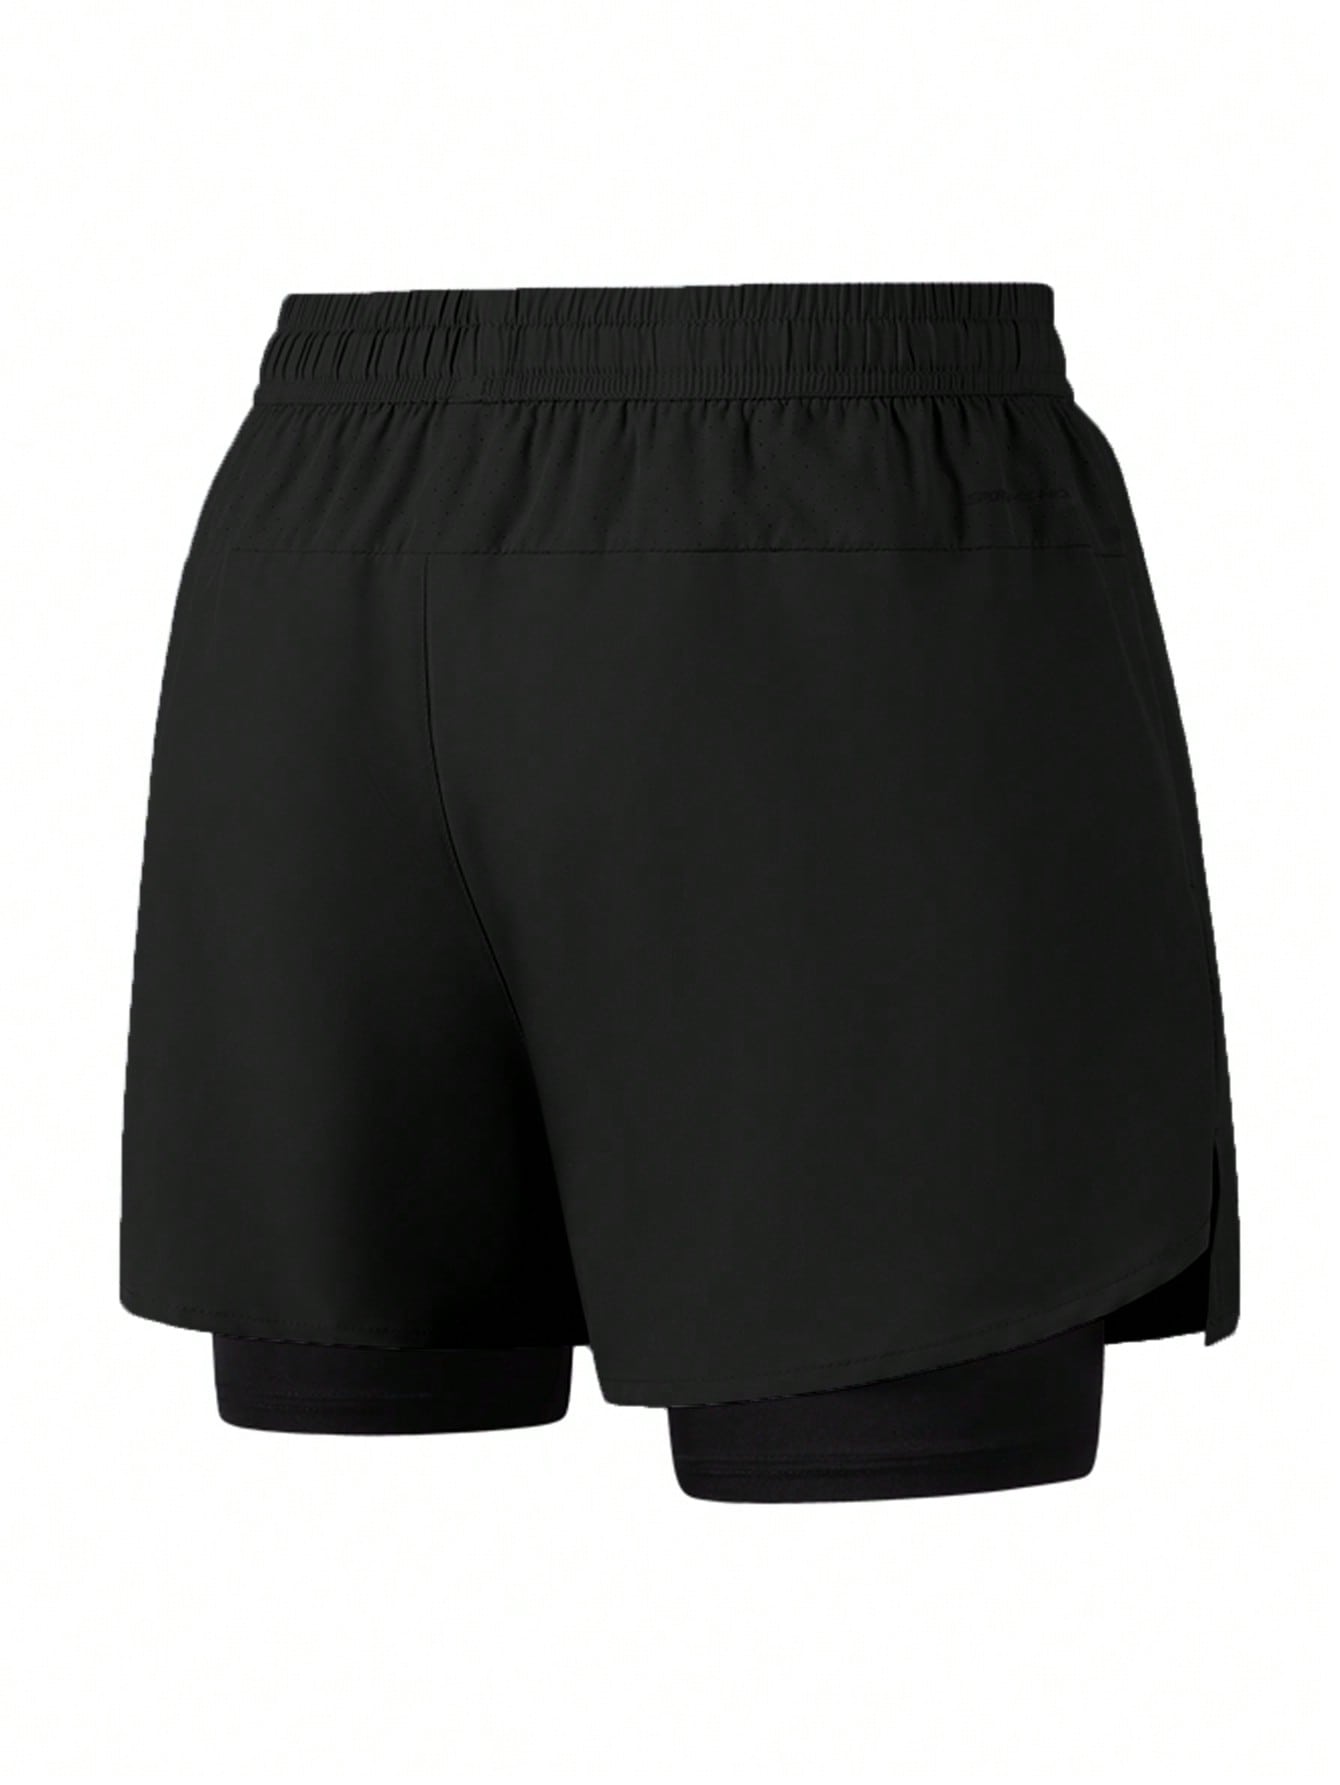 1 шт. Мужские быстросохнущие дышащие спортивные шорты из двух частей, черный фото